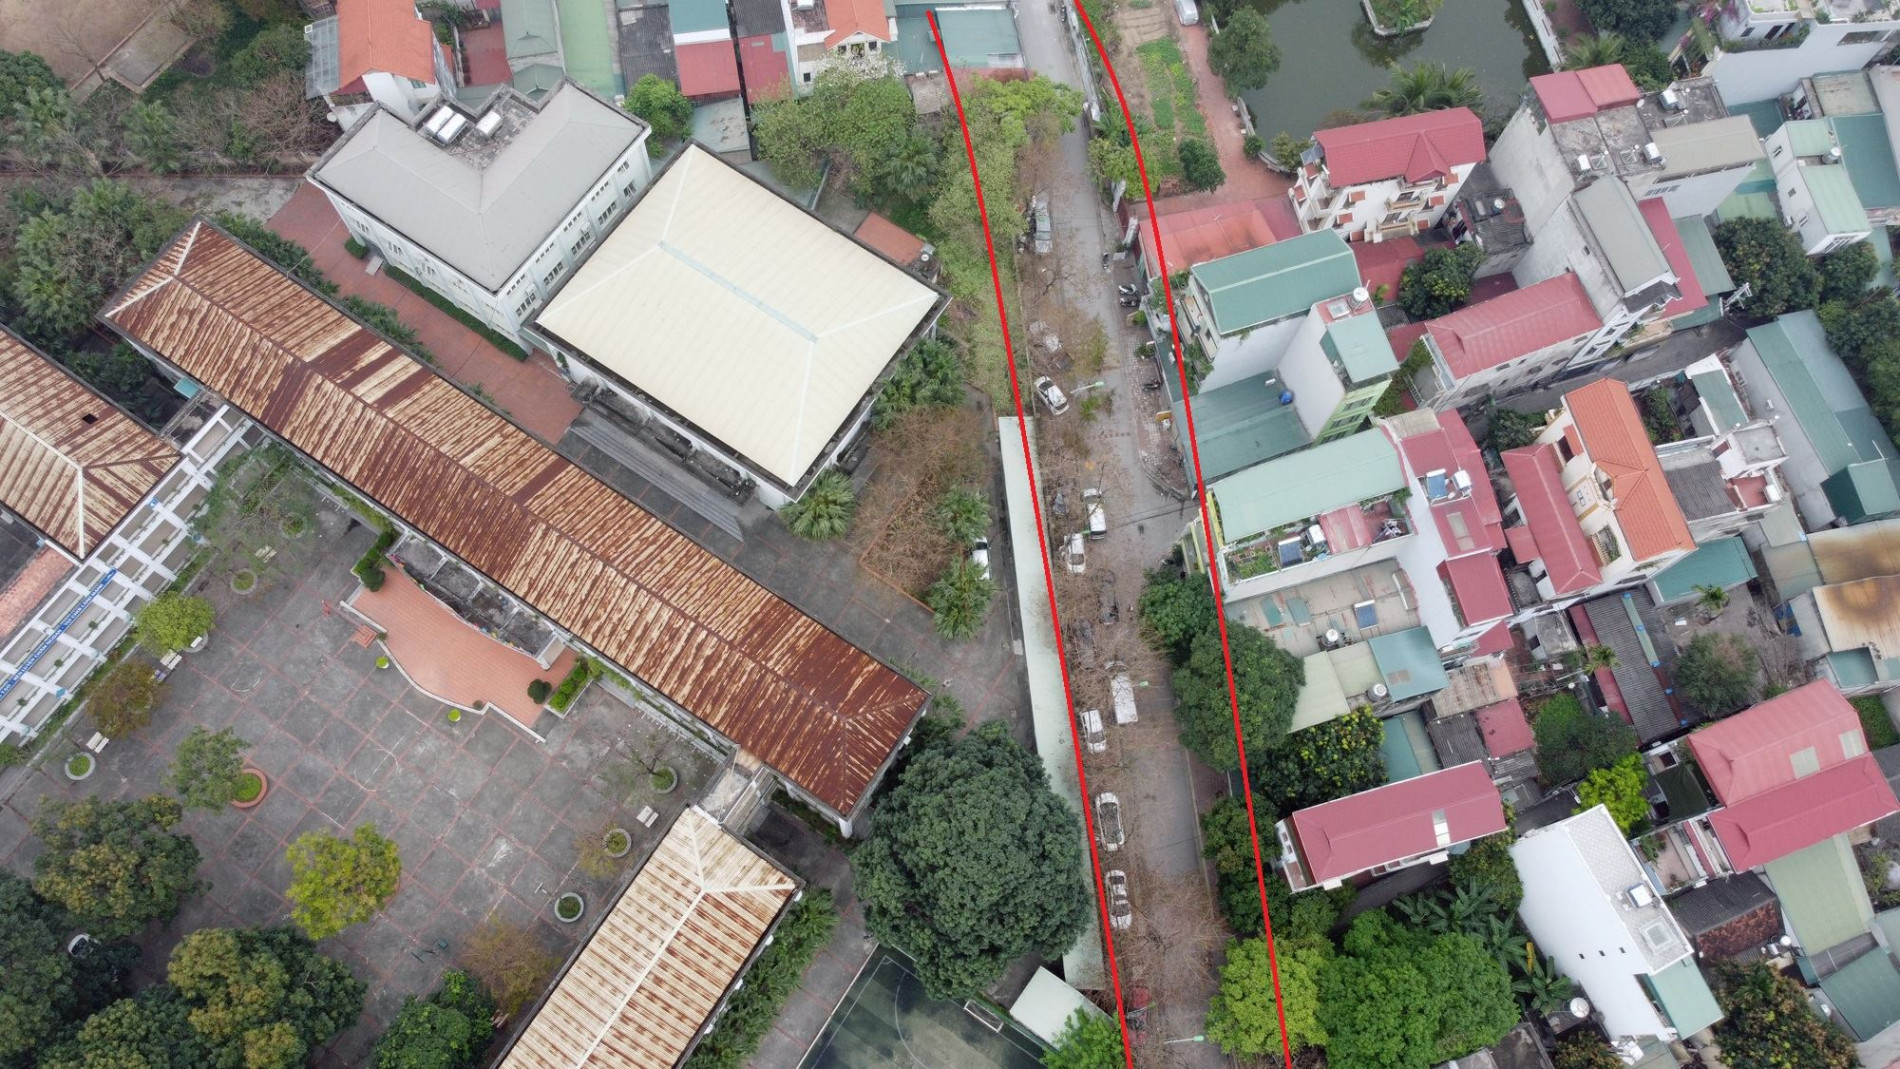 Những khu đất sắp thu hồi để mở đường ở phường Gia Thụy, Long Biên, Hà Nội (phần 2)